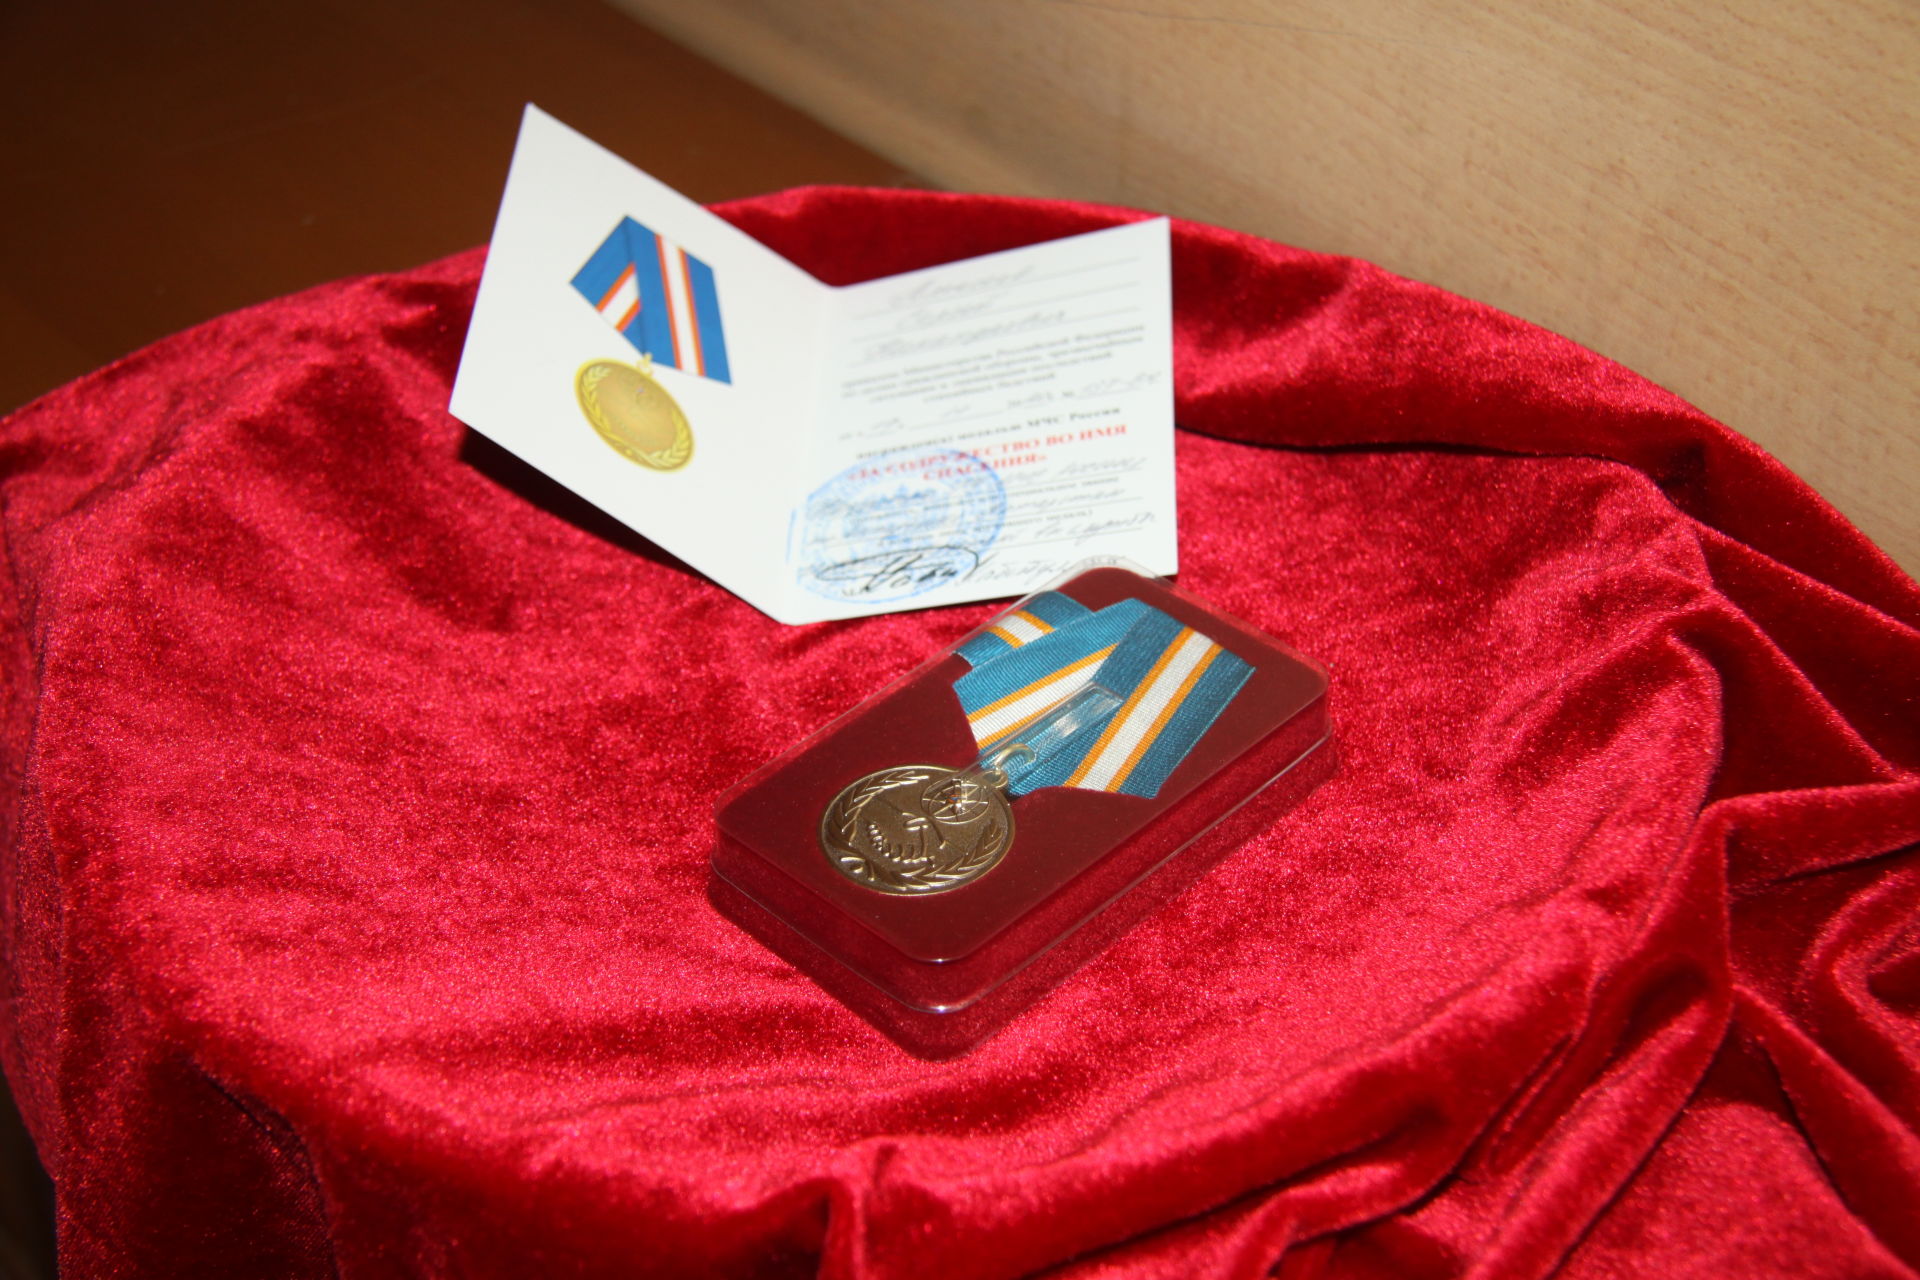 Добровольного пожарного из Больших Ключей наградили медалью МЧС России «За содружество во имя спасения»